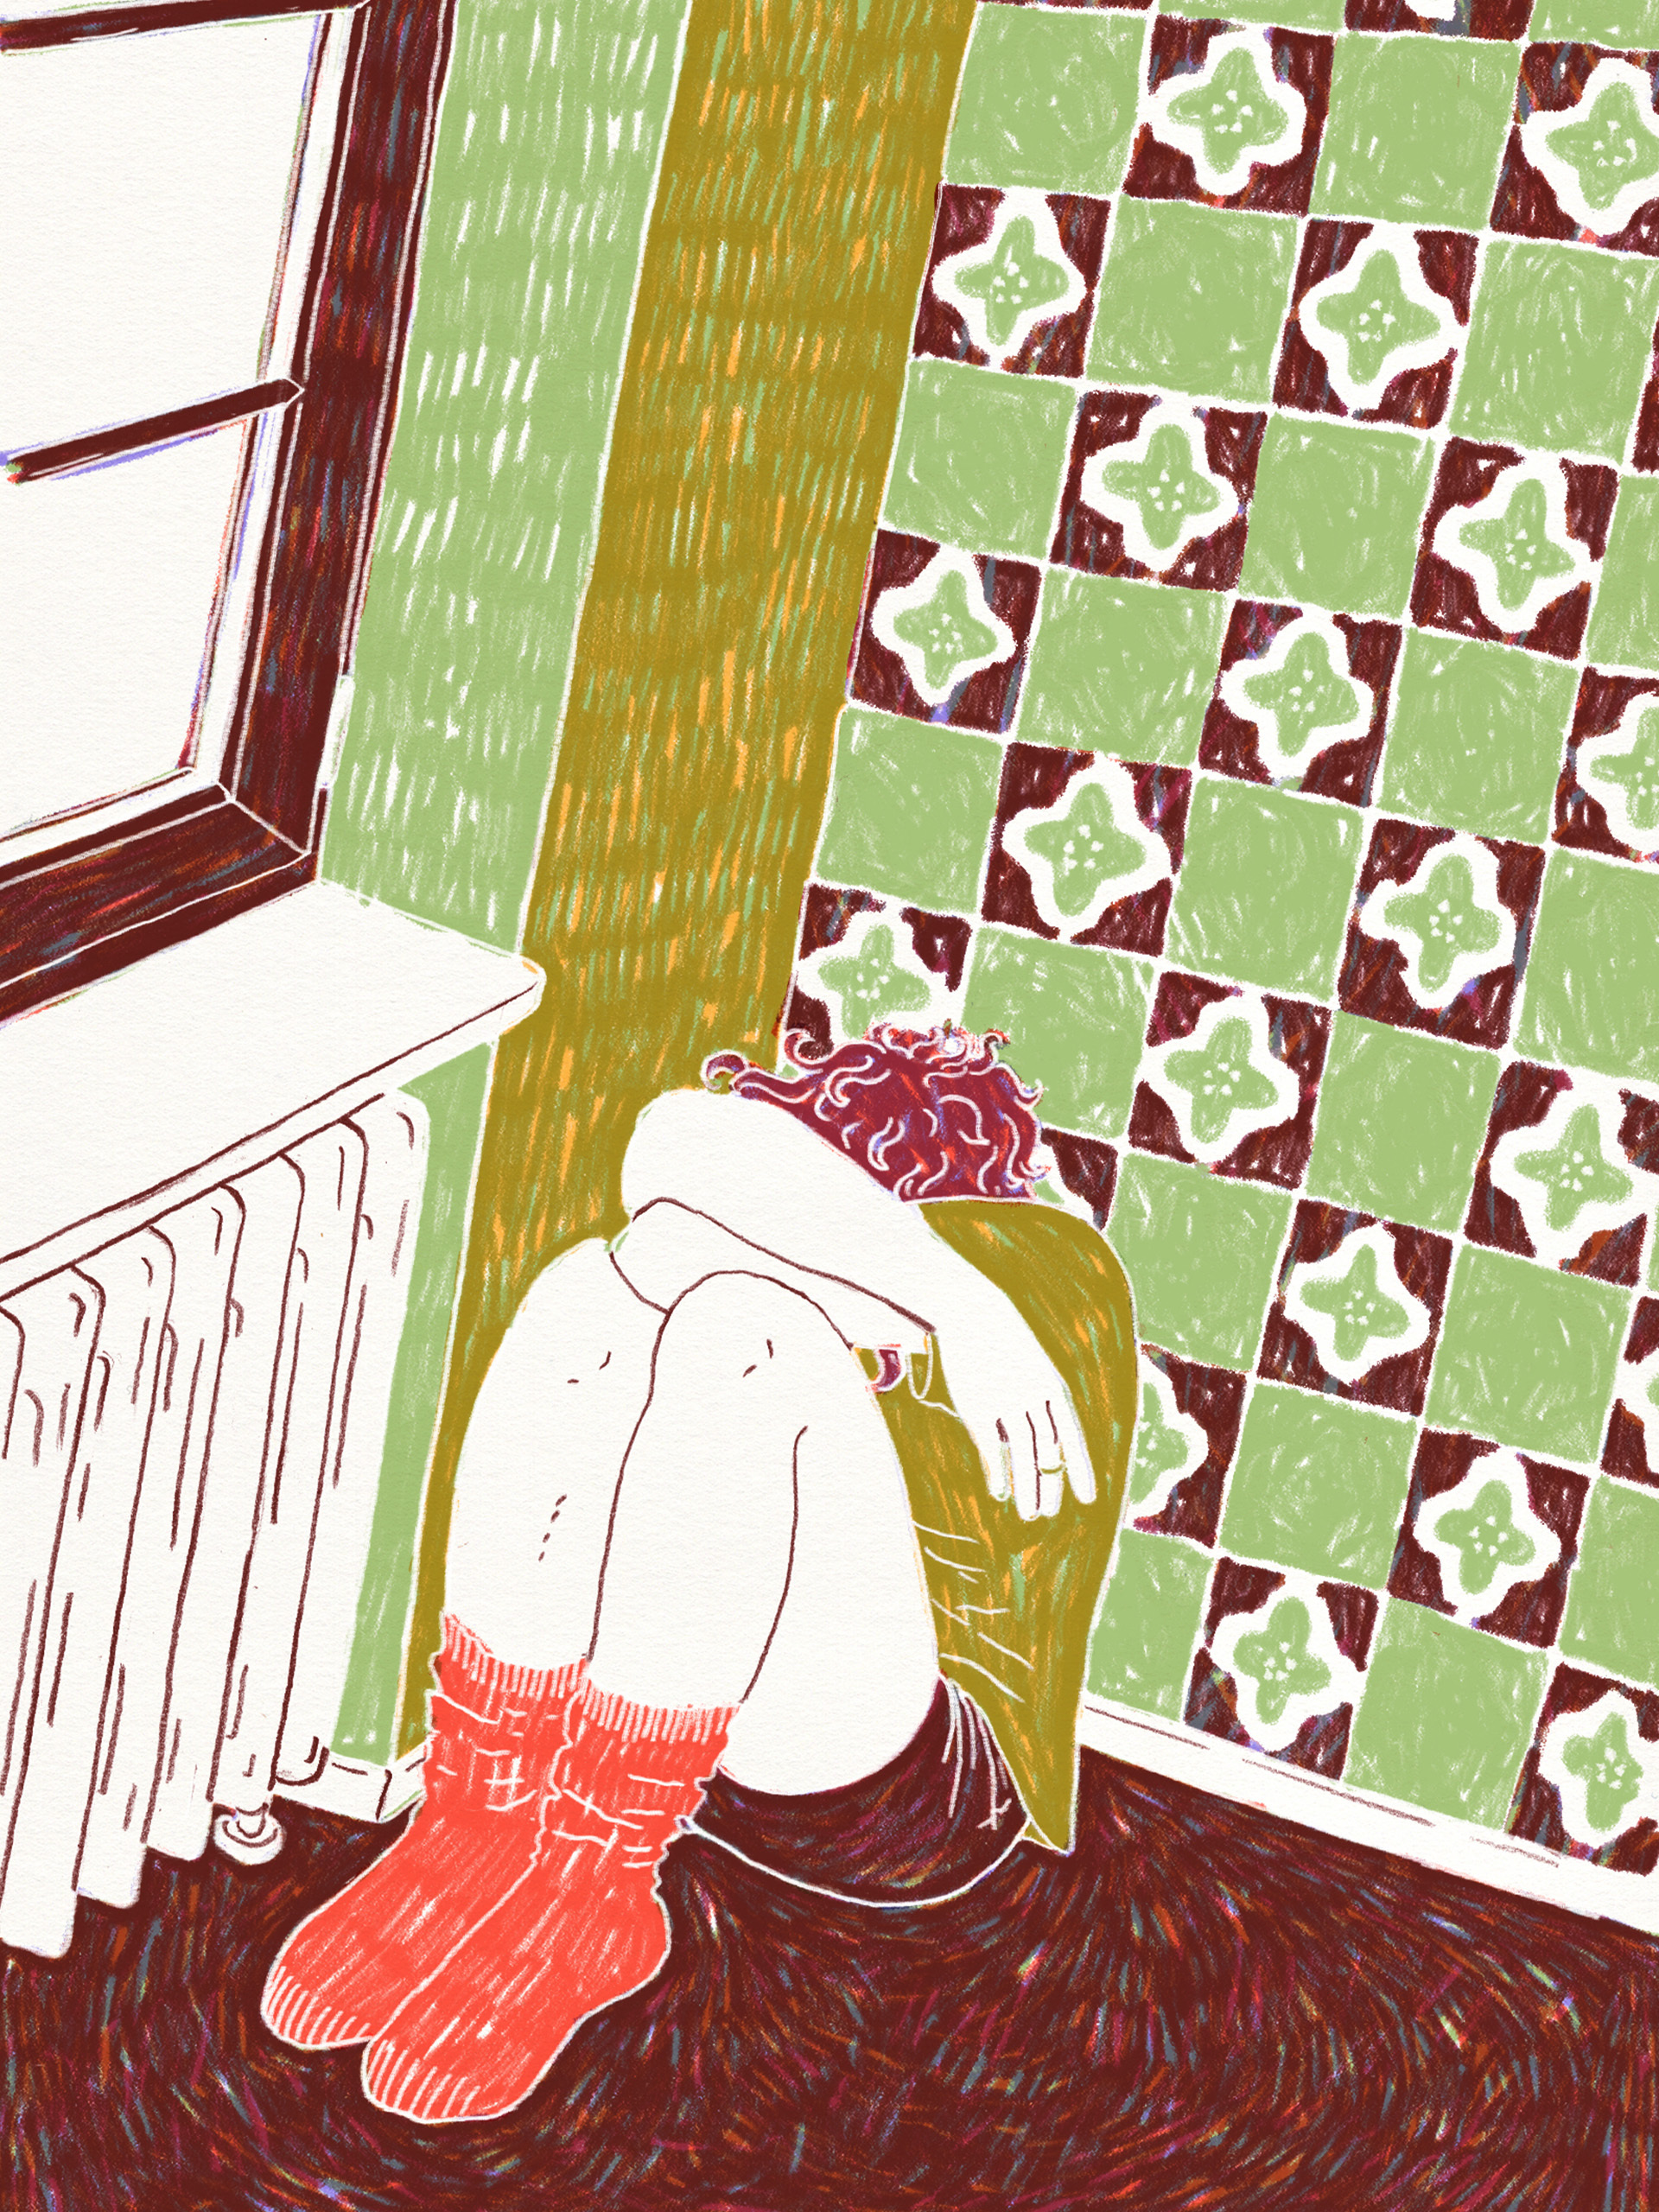 Editorial Illustration zum Thema Depression/Burnout. Dargestellt ist eine Person, die zusammengekauert in einer Ecke sitzt und ihren Kopf hinter den Armen versteckt.